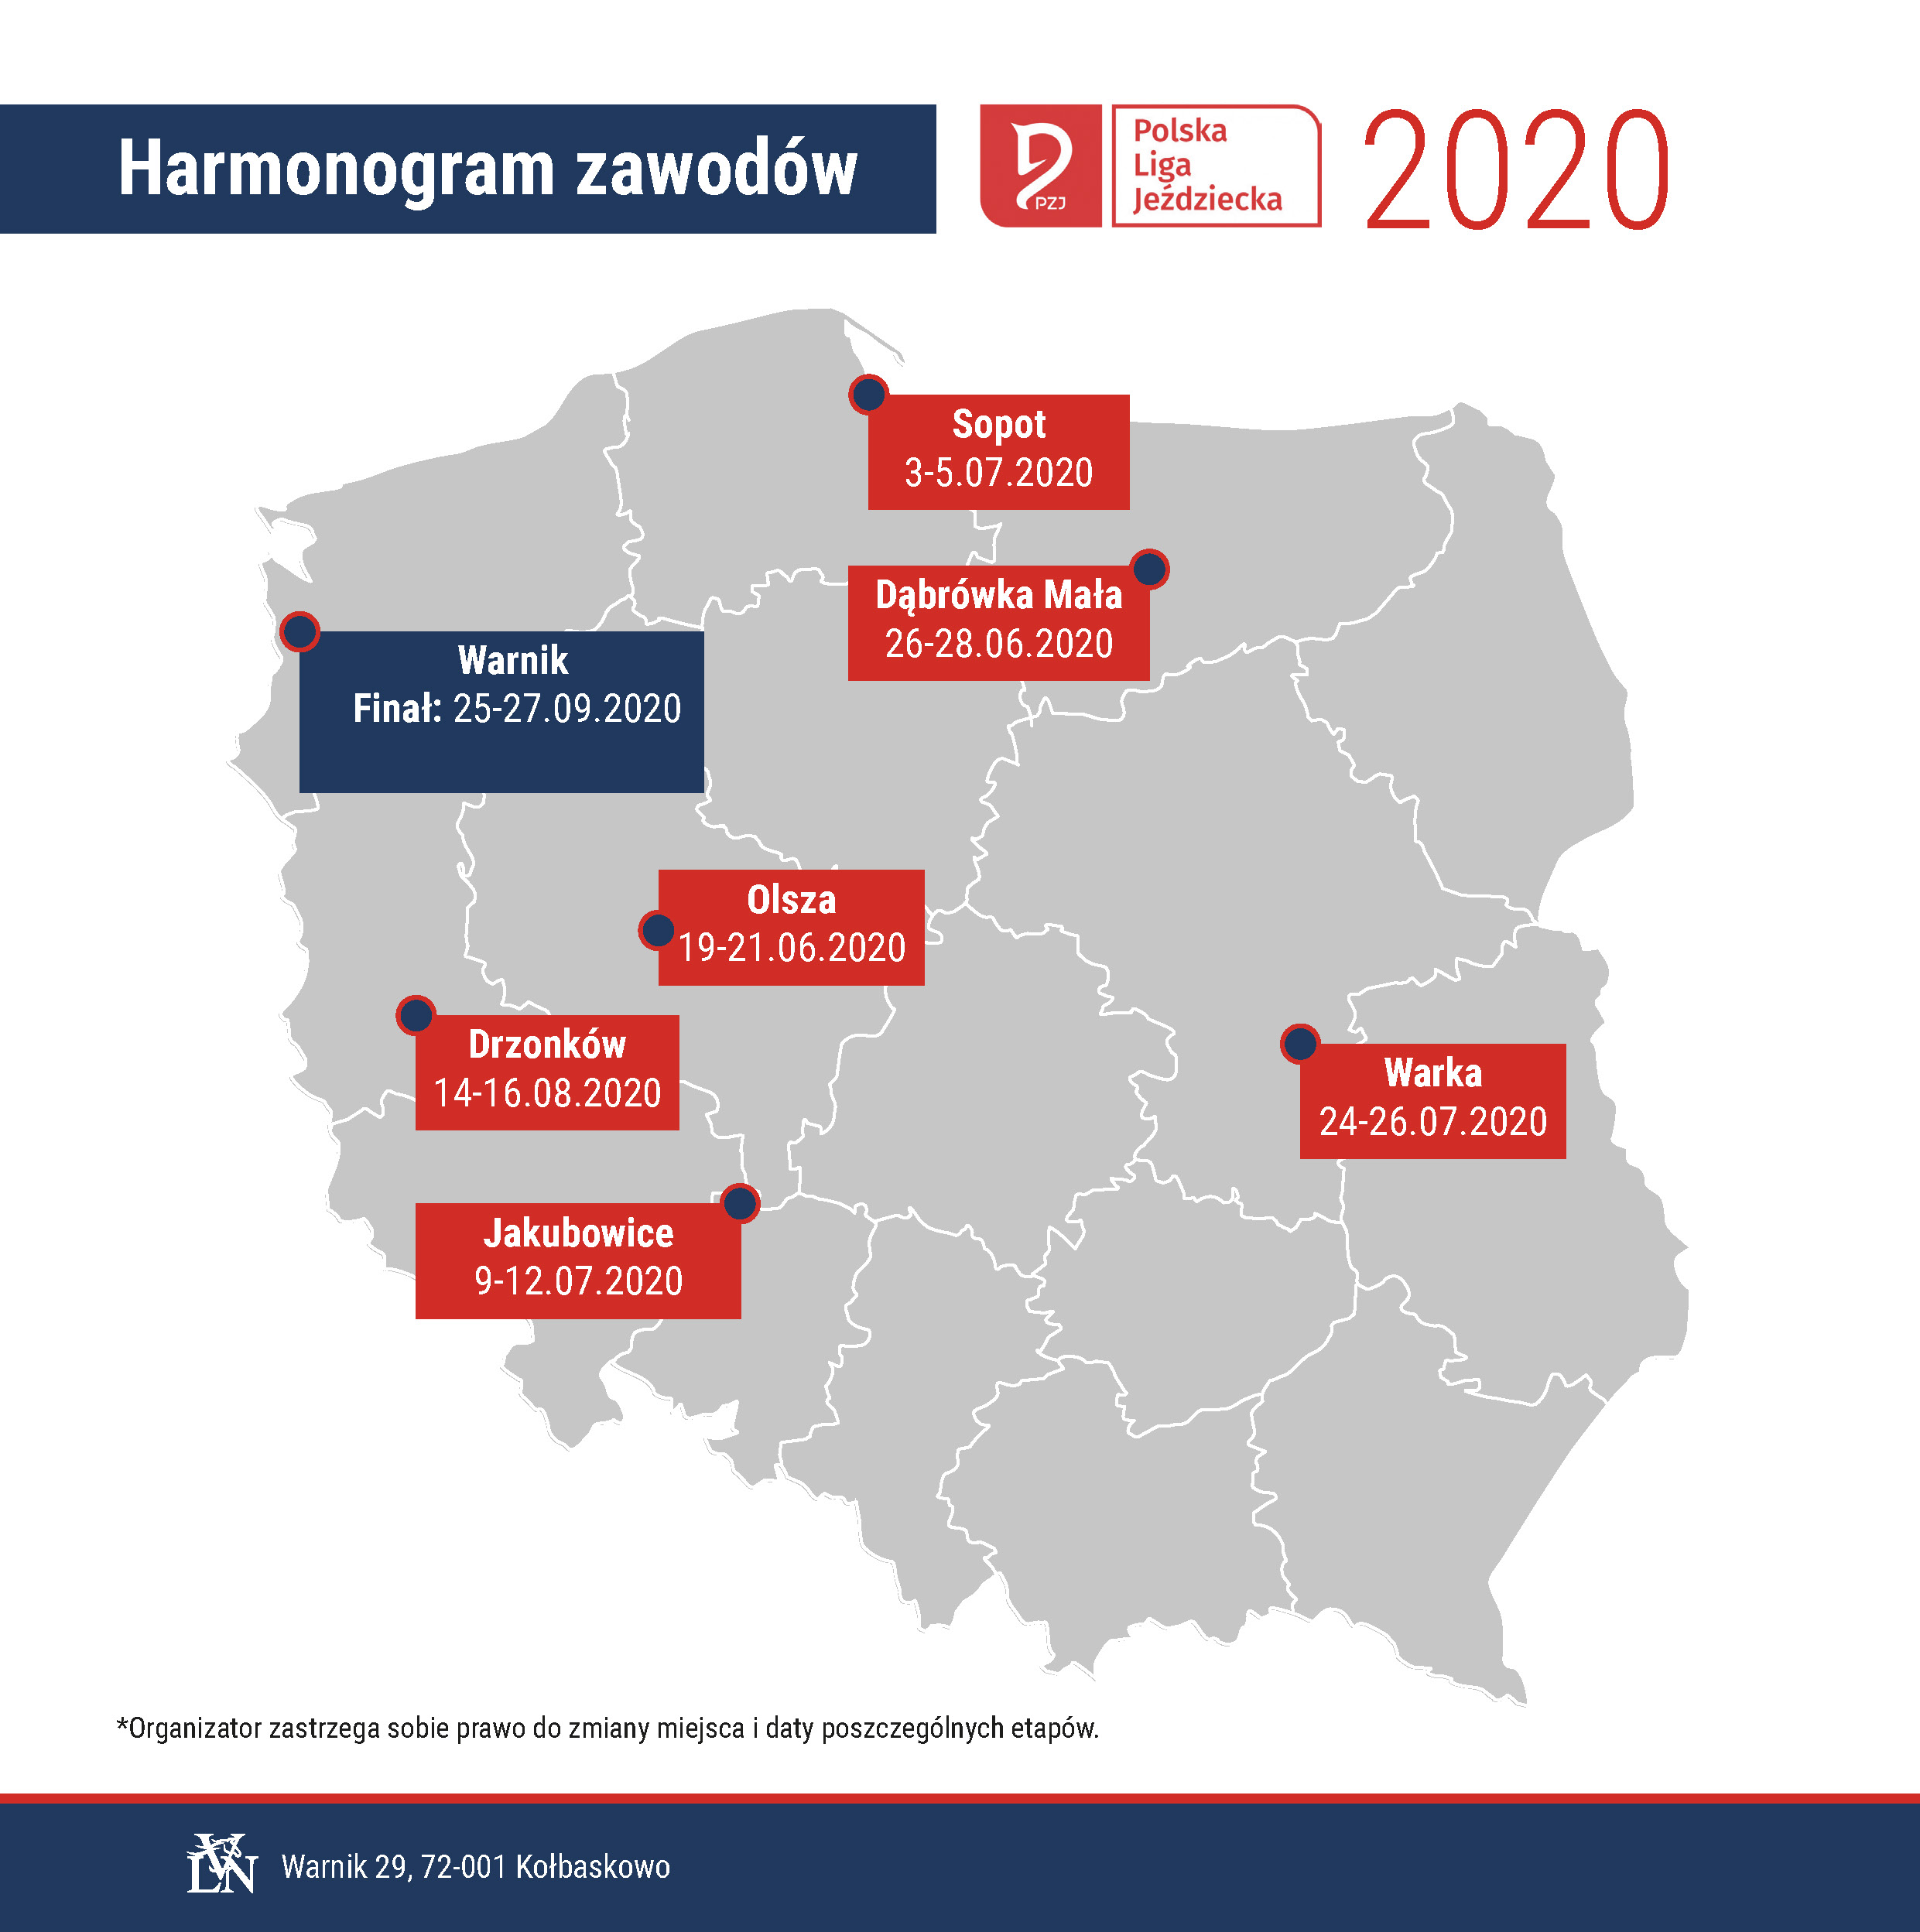 Aktualny kalendarz rozgrywek  Polskiej Ligi Jeździeckiej  2020.